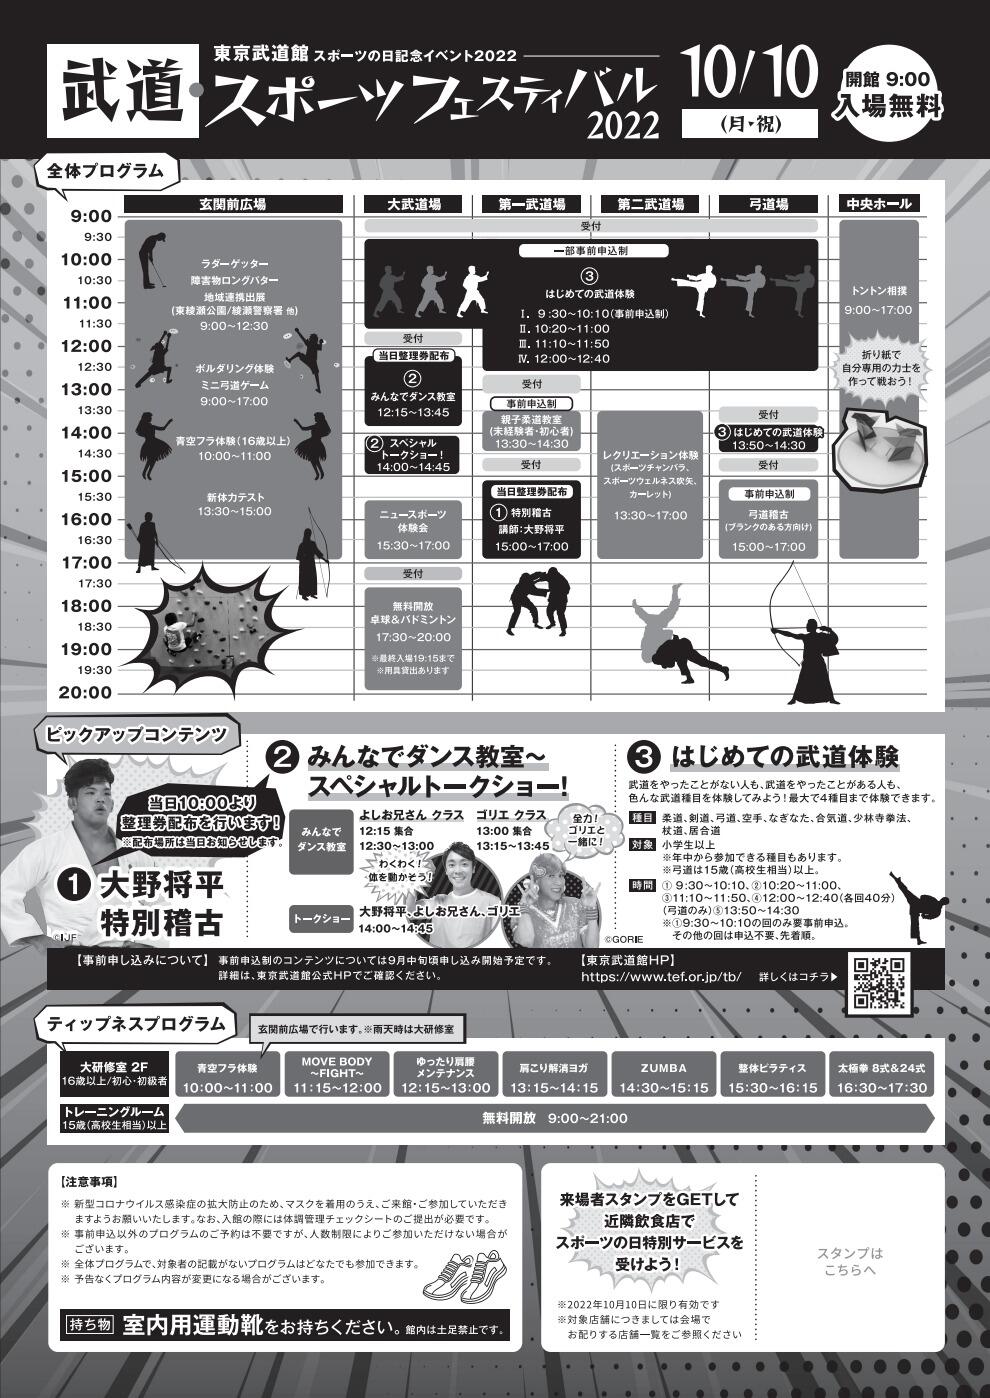 武道・スポーツフェスティバル2022「久しぶりの弓道稽古」